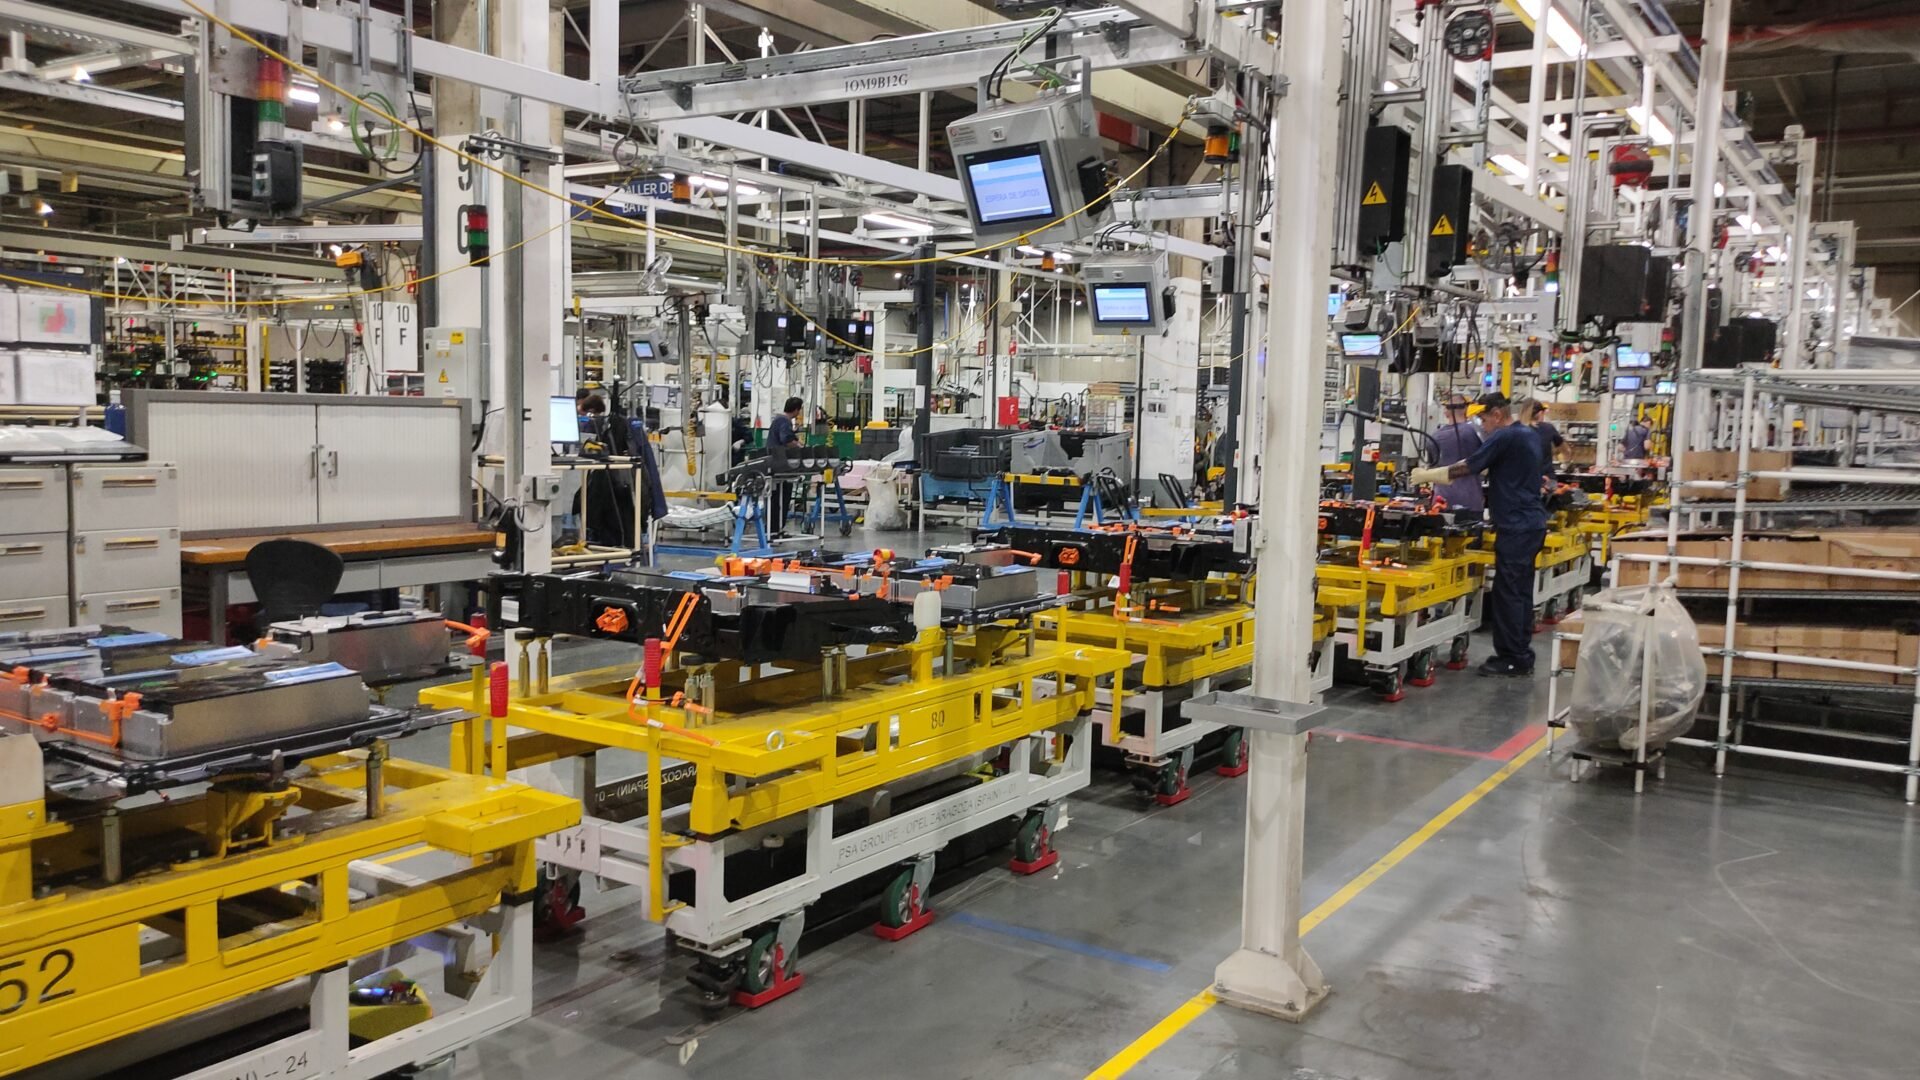  Grupul indian Tata a anunţat oficial că va construi o fabrică de baterii pentru vehicule electrice în UK